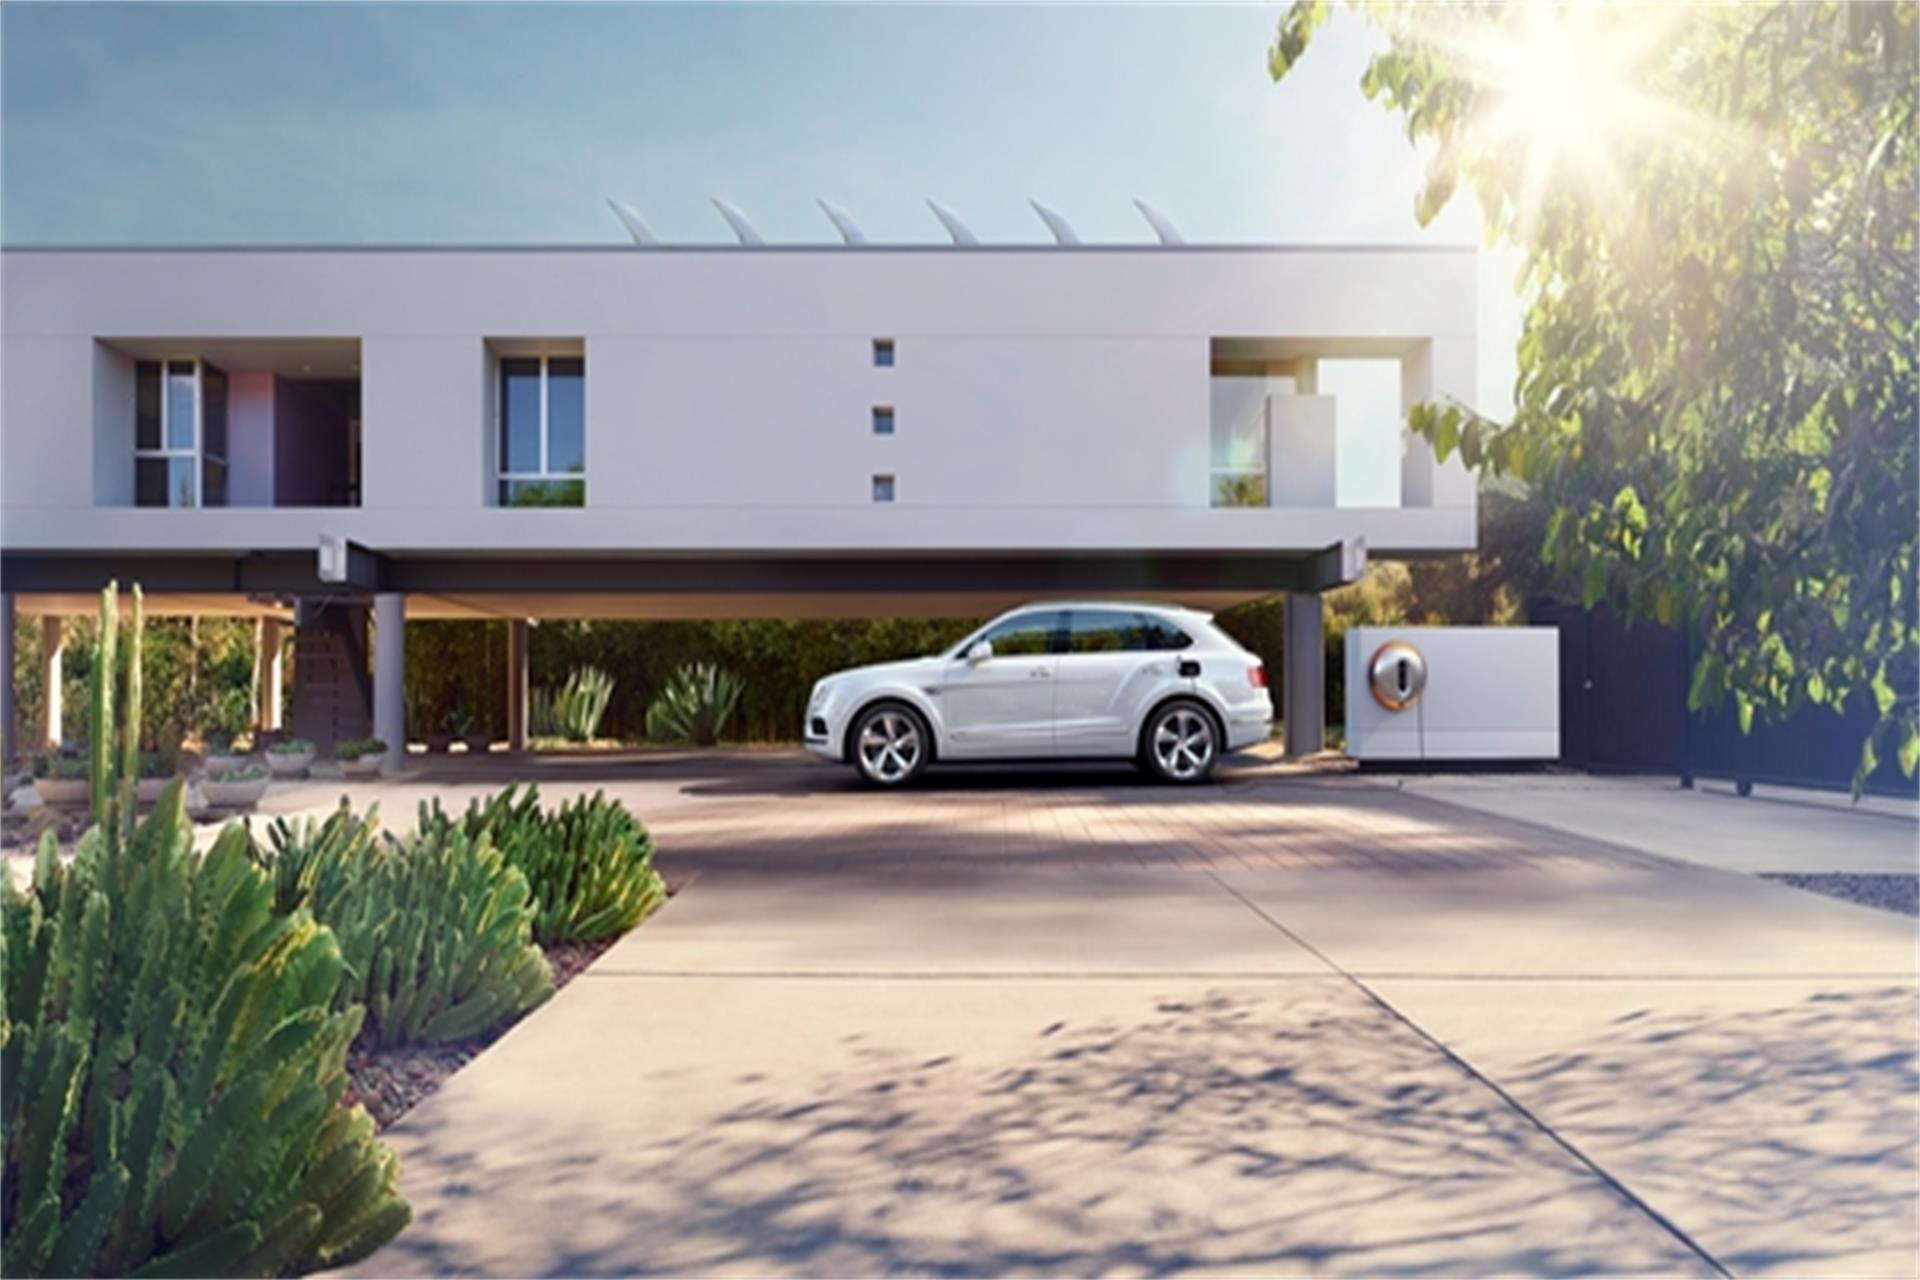 全球著名设计大师Philippe Starck为宾利汽车设计令人惊艳的Power Dock壁挂式充电装置.jpg